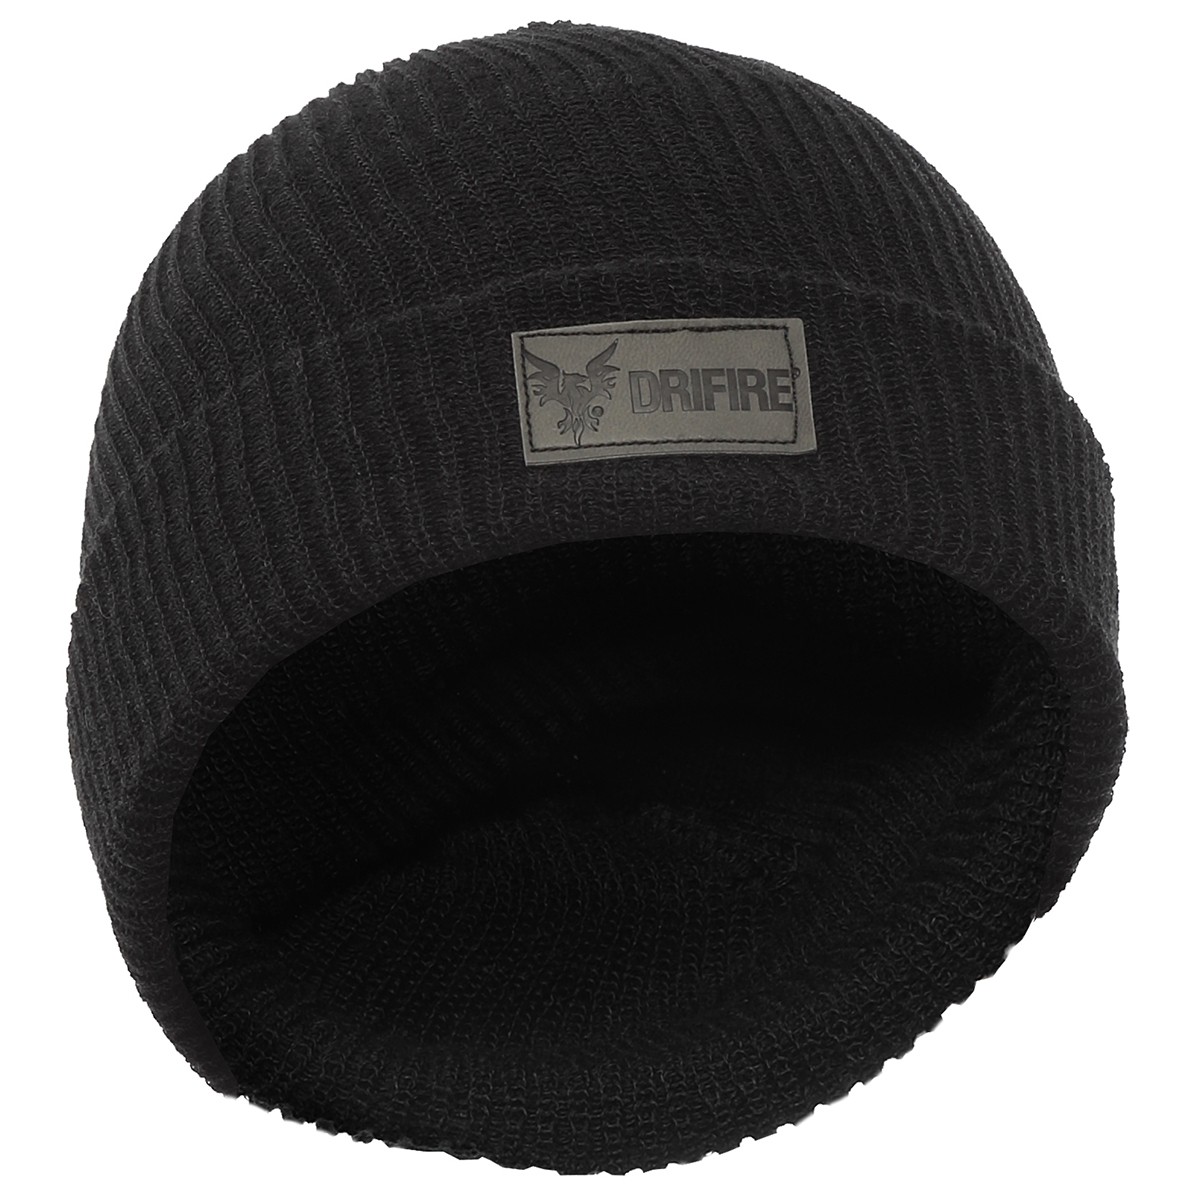 DRIFIRE FR Knit Winter Hat in Black